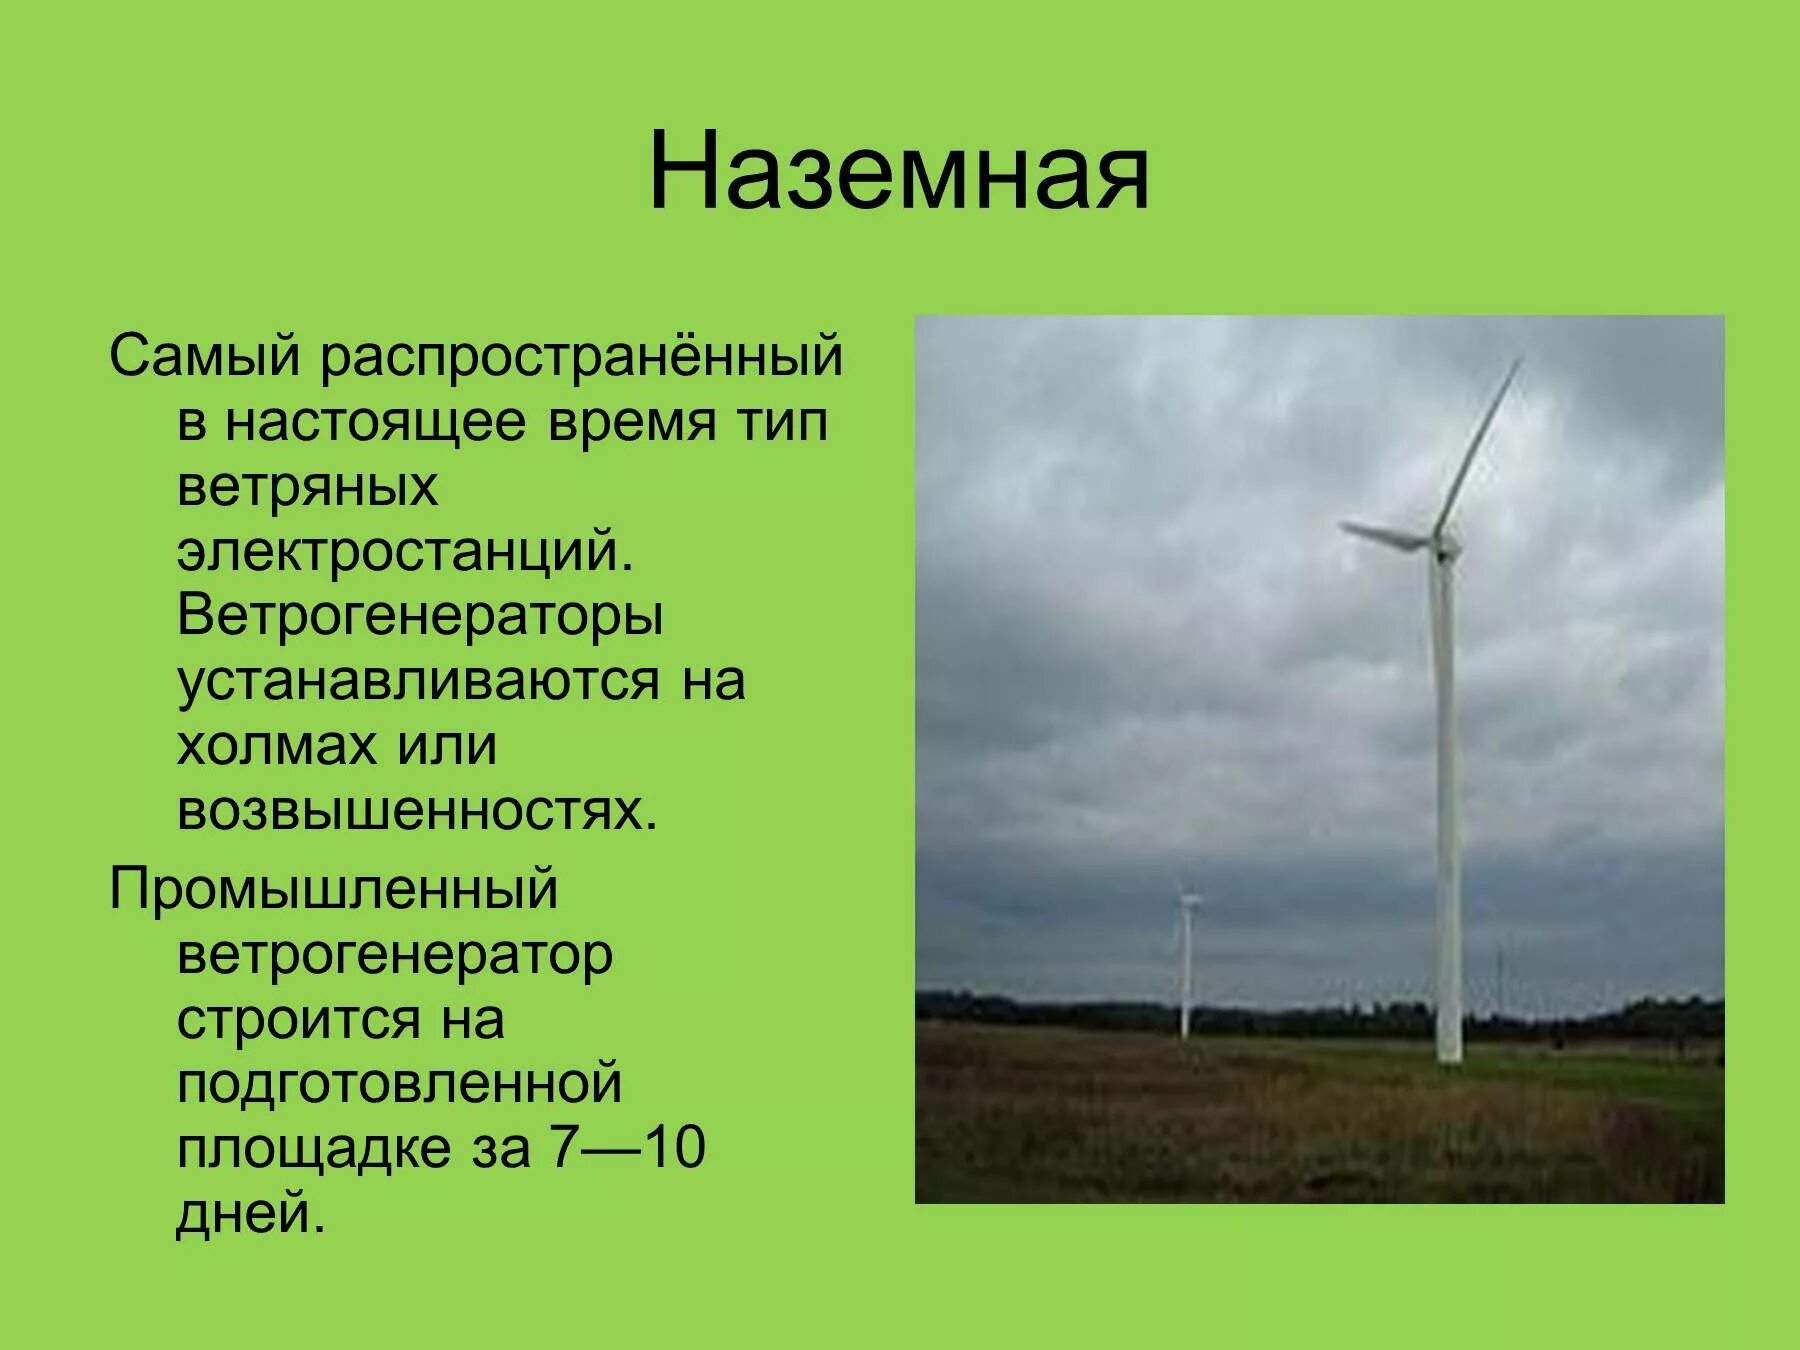 Ветряная электростанция презентация. Ветряные электростанции презентация. Ветряные электростанции сообщение. Сообщение о ветряной энергии.